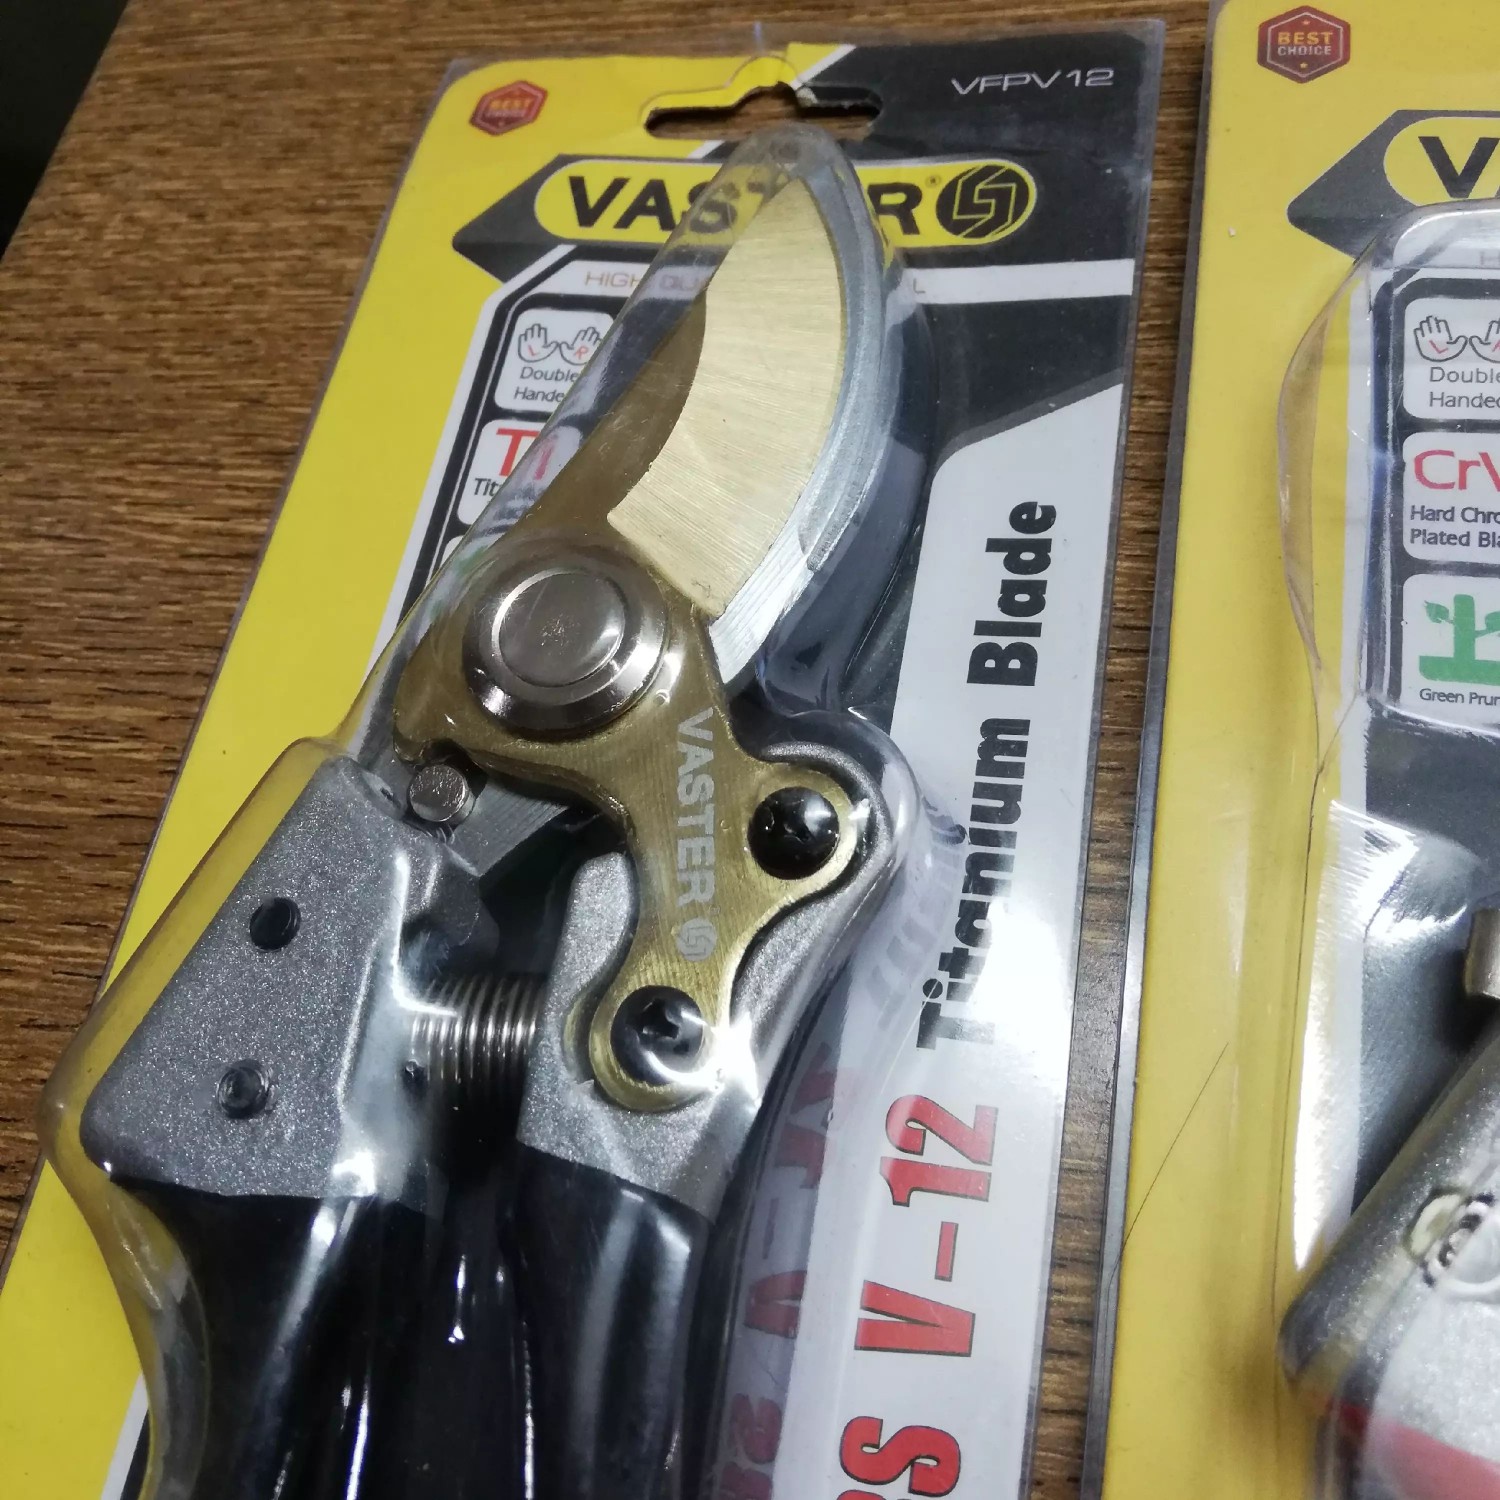 خرید قیچی واستر v12